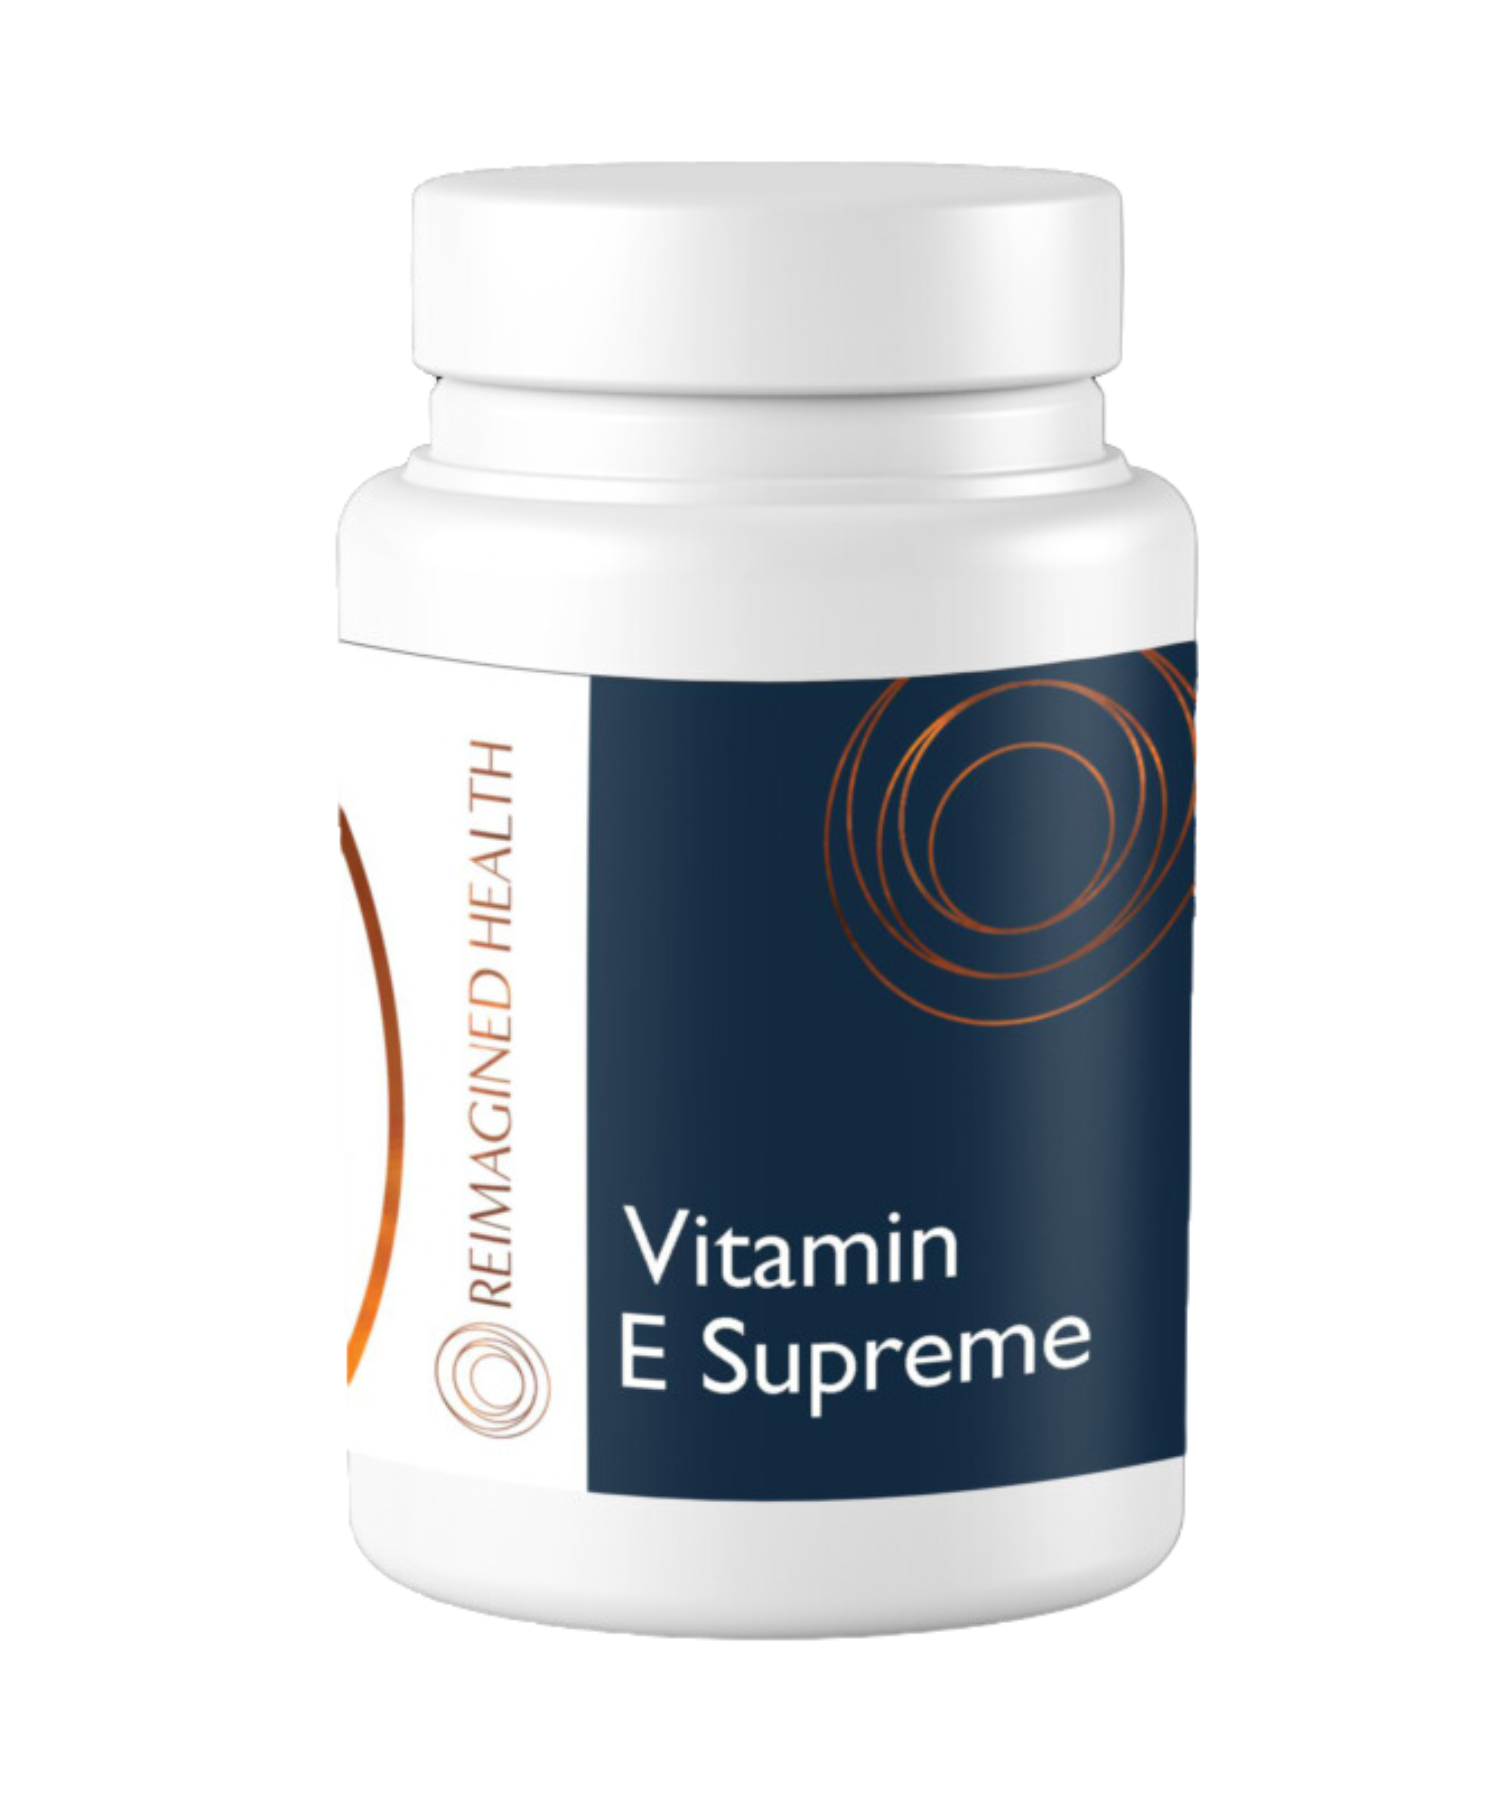 Vitamin-E-Supreme-B519-1.png